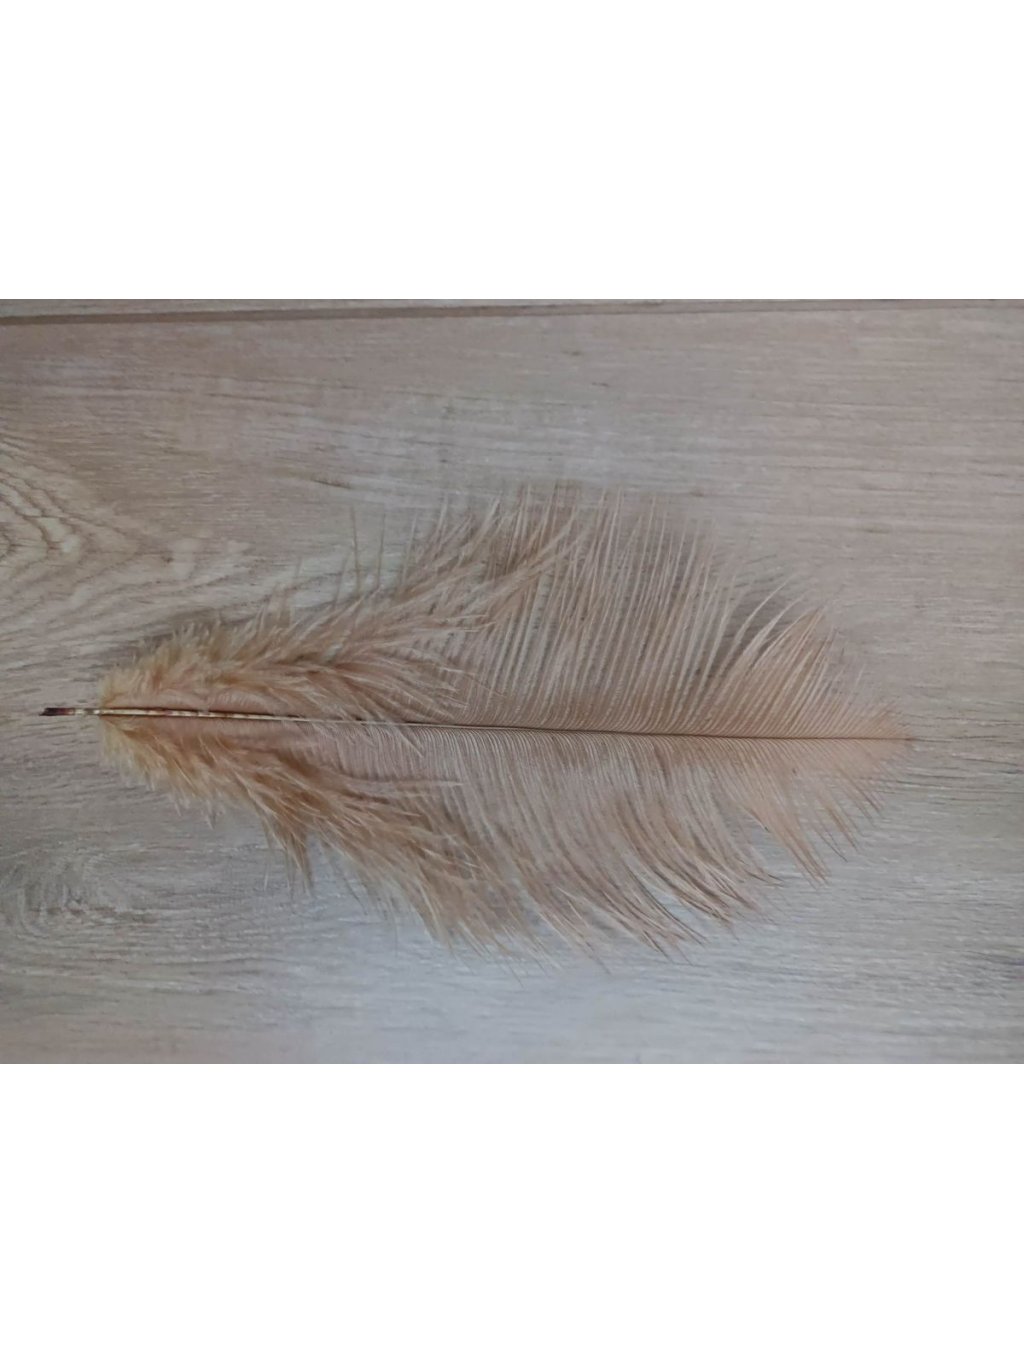 Pštrosí peří cibulové 25 - 30 cm